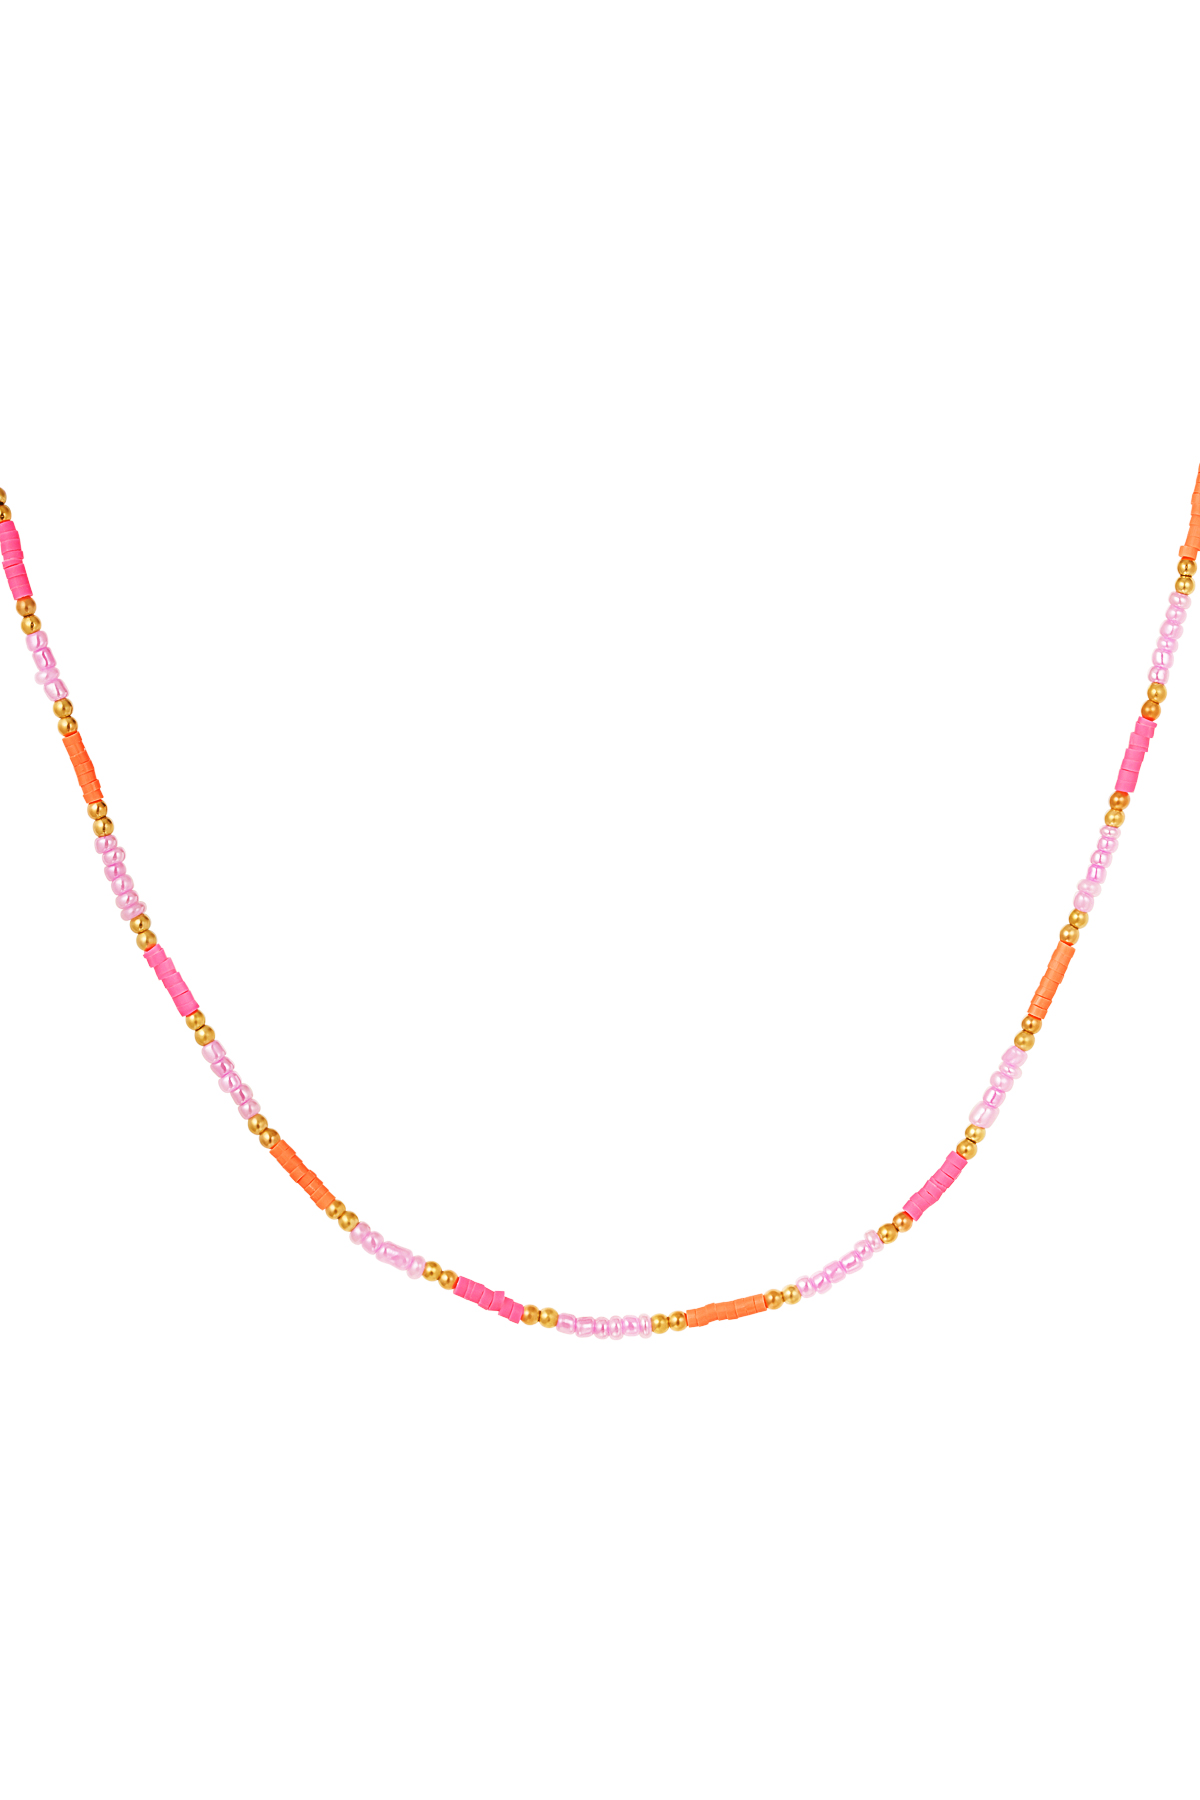 Halskette kleine bunte Perlen - rosa/orange h5 